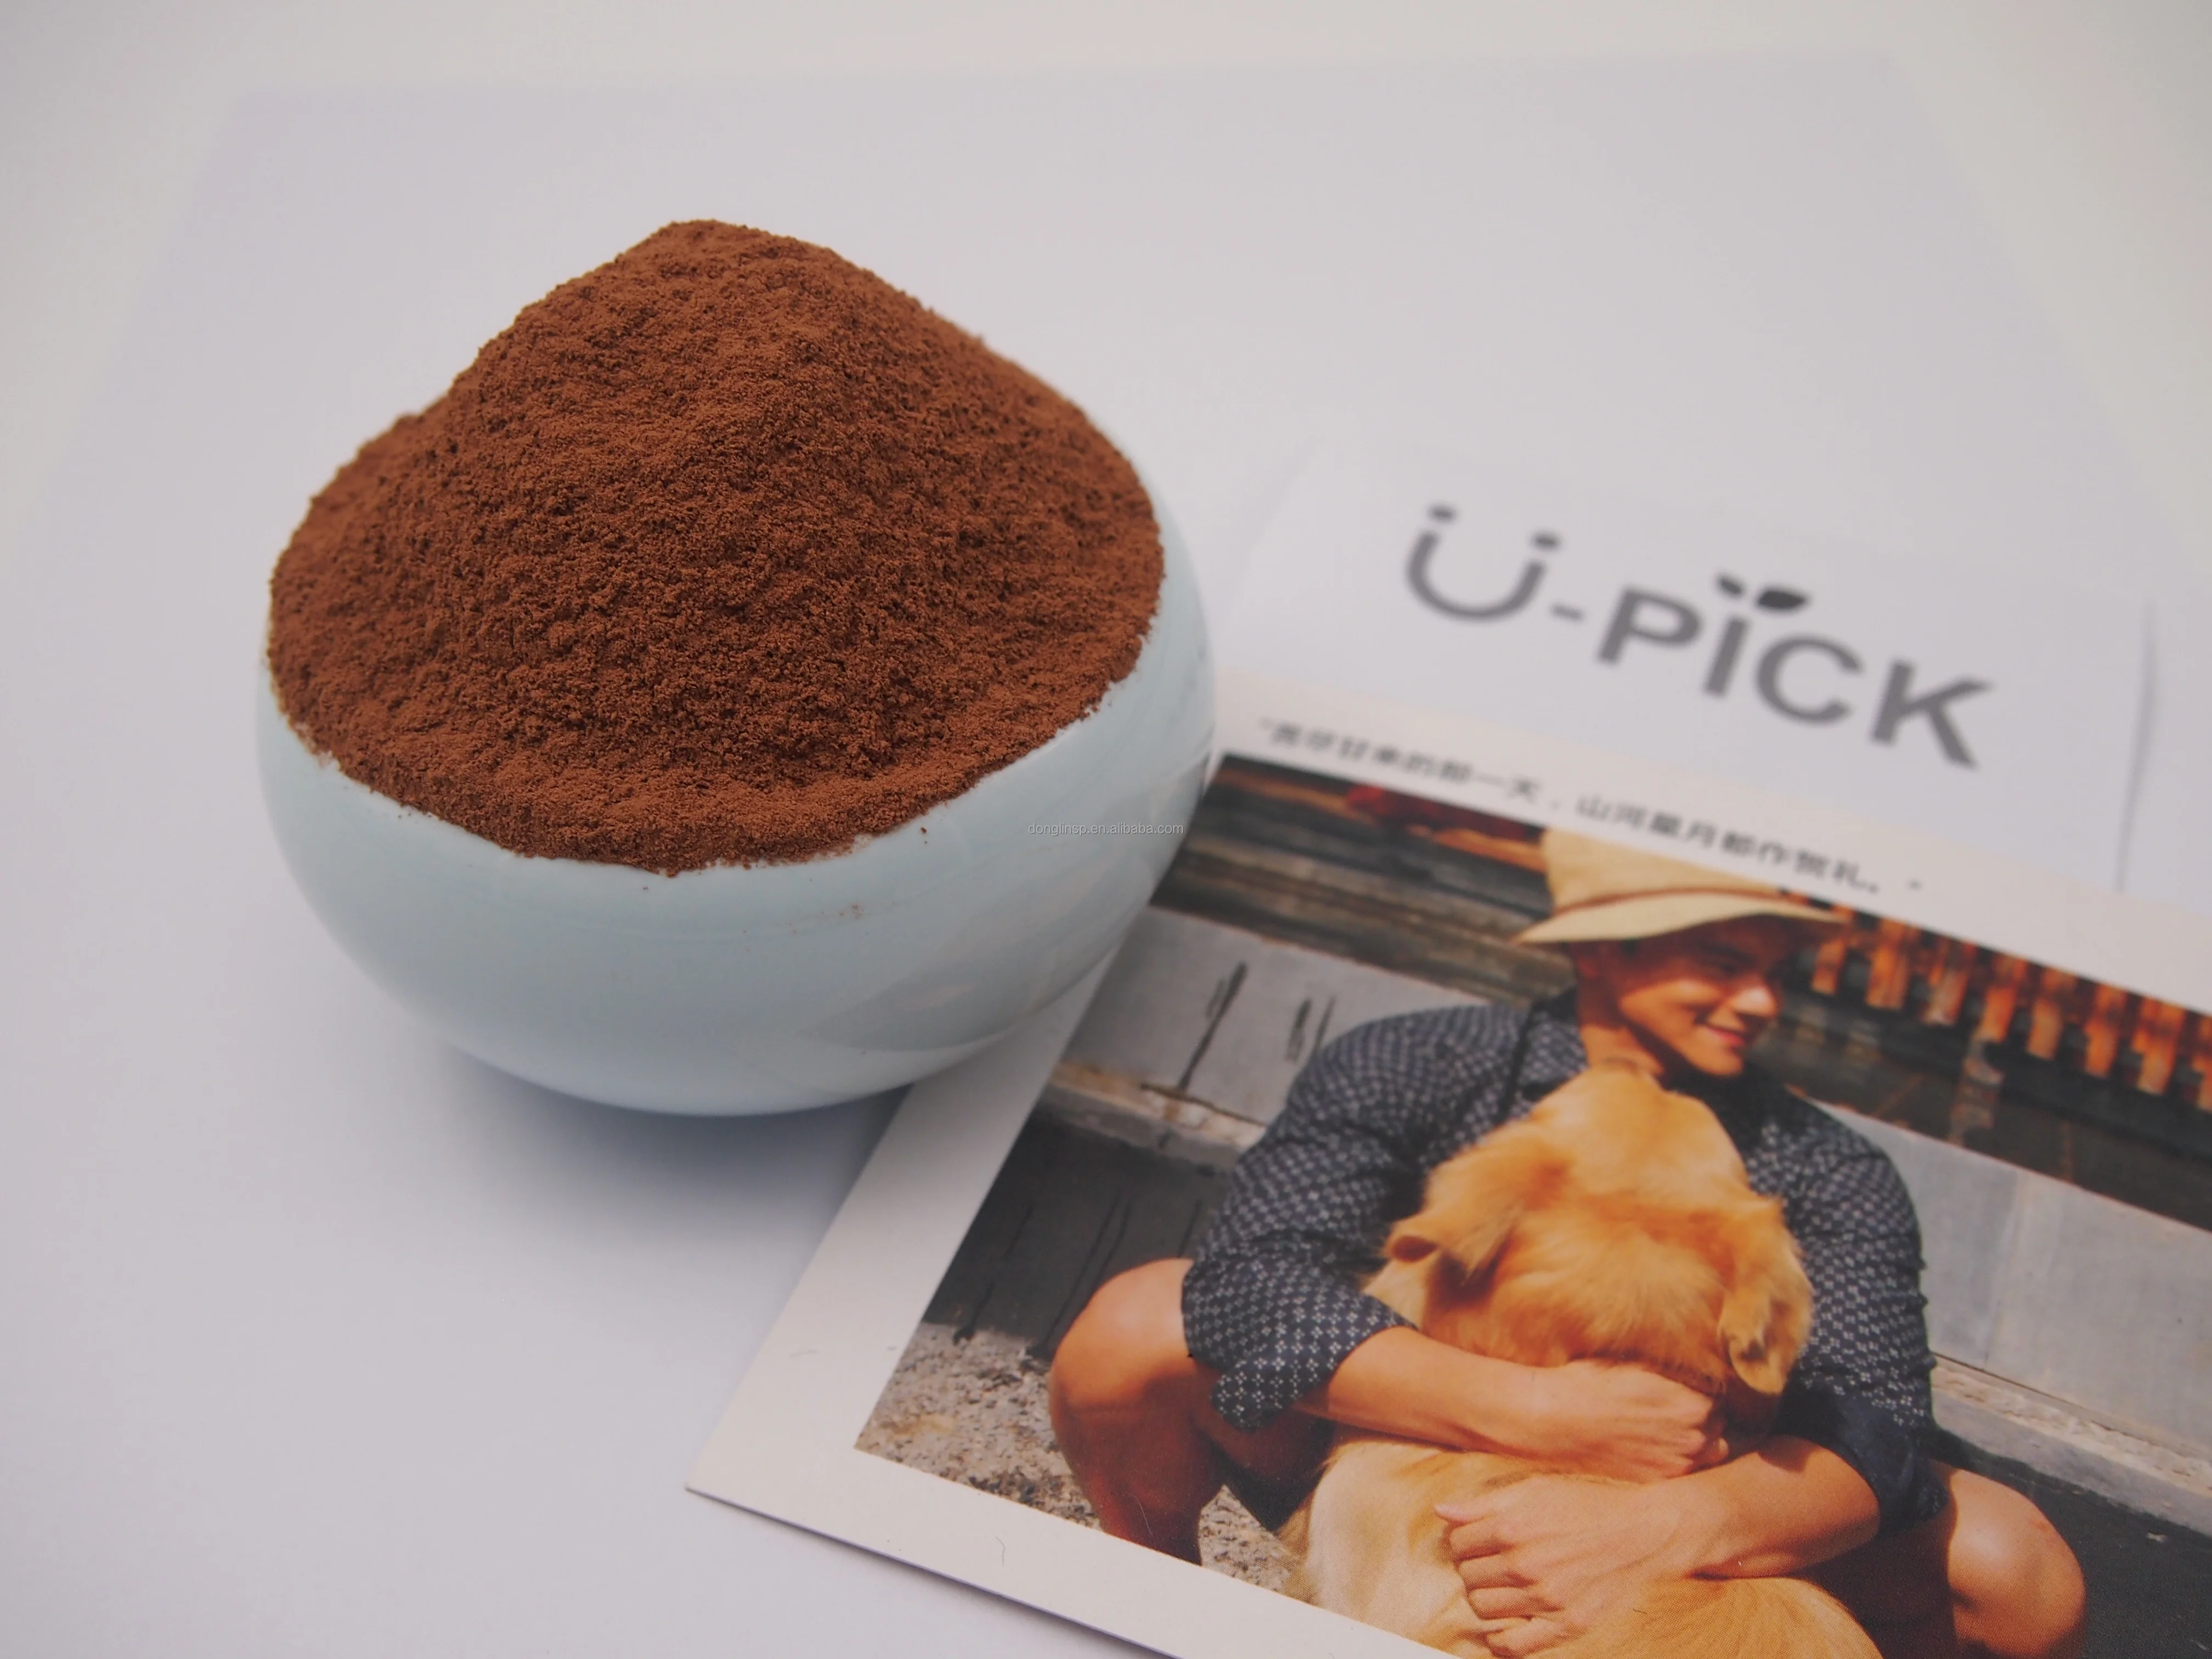 Натуральный Пакет какао-порошка от производителя, Кошерный хлебобулочный материал для молока